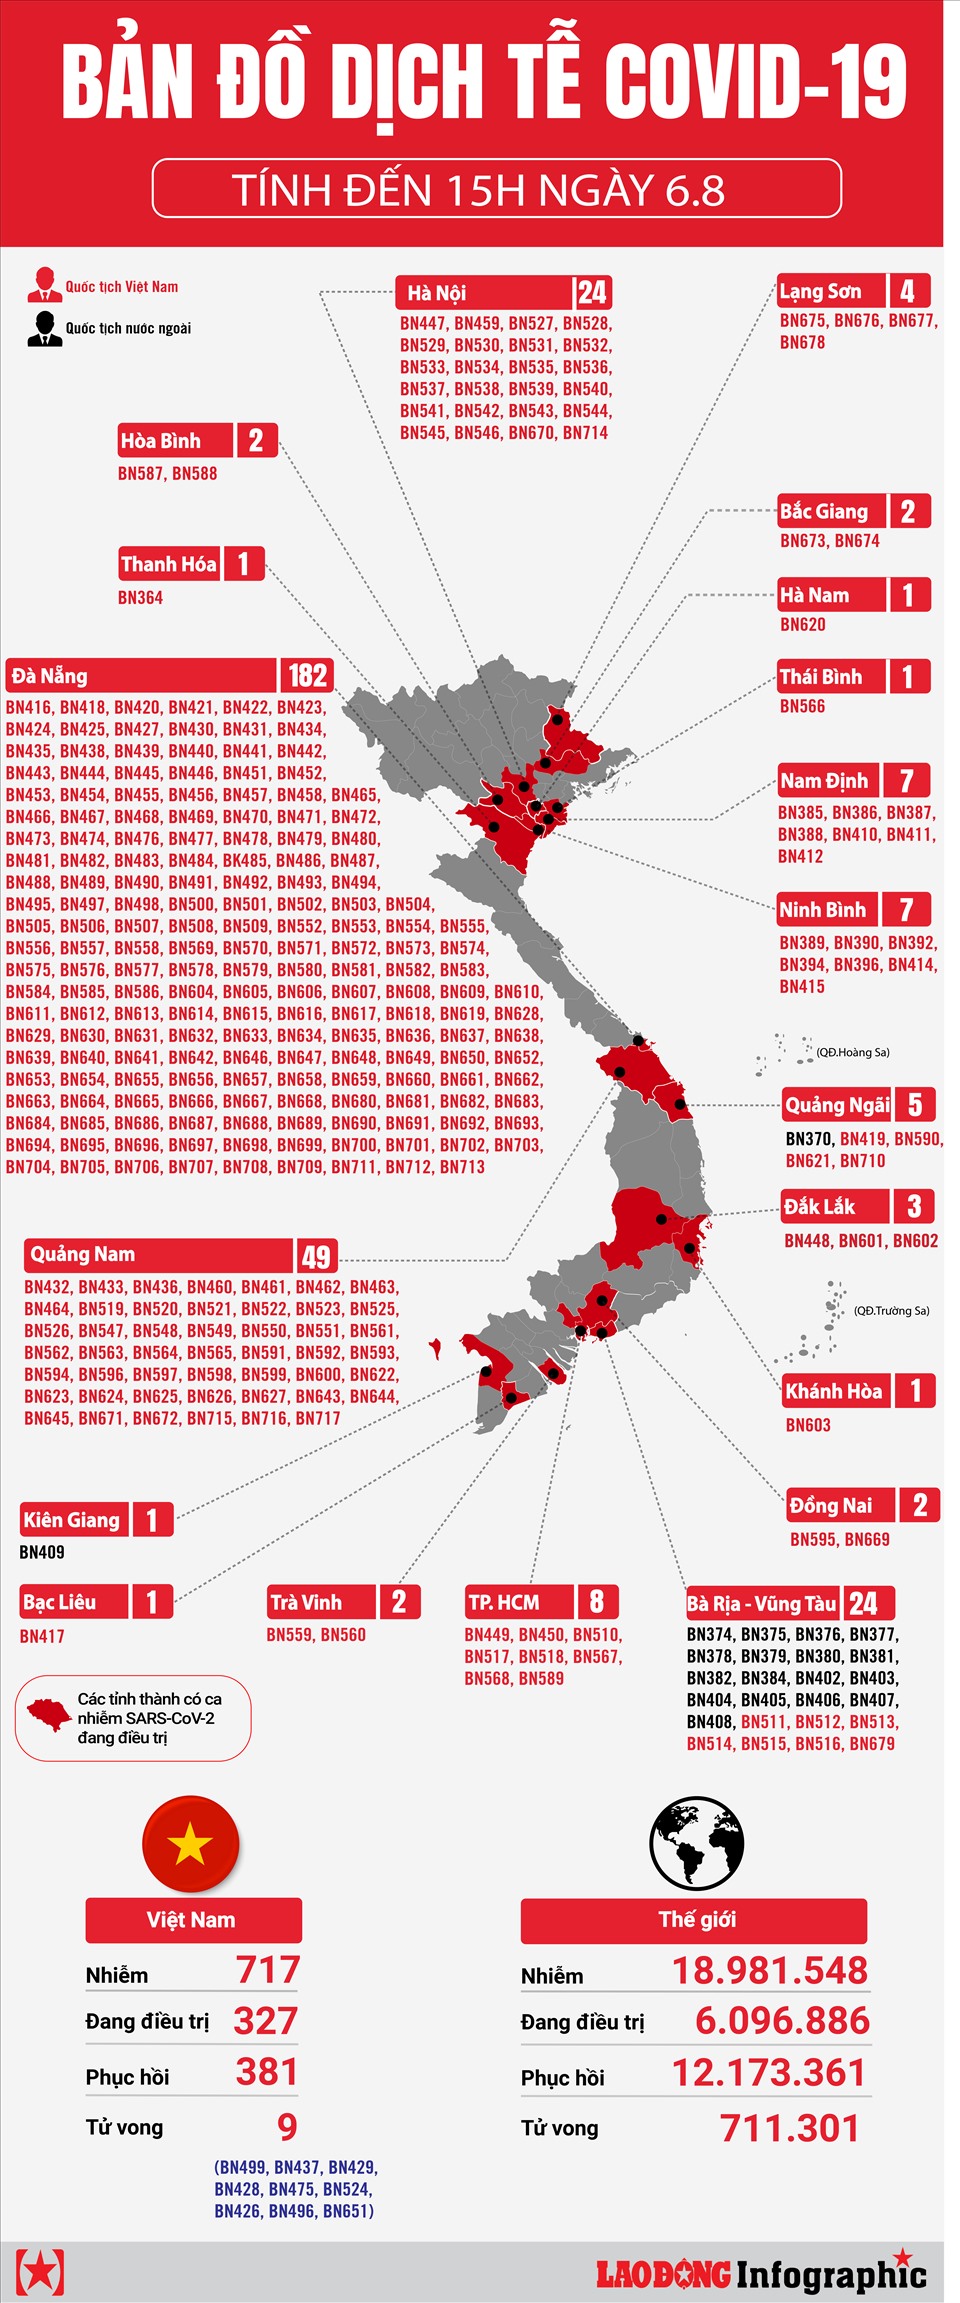 Truy cập và phân tích bản đồ vùng dịch Việt Nam mới nhất cho thông tin chính xác nhất